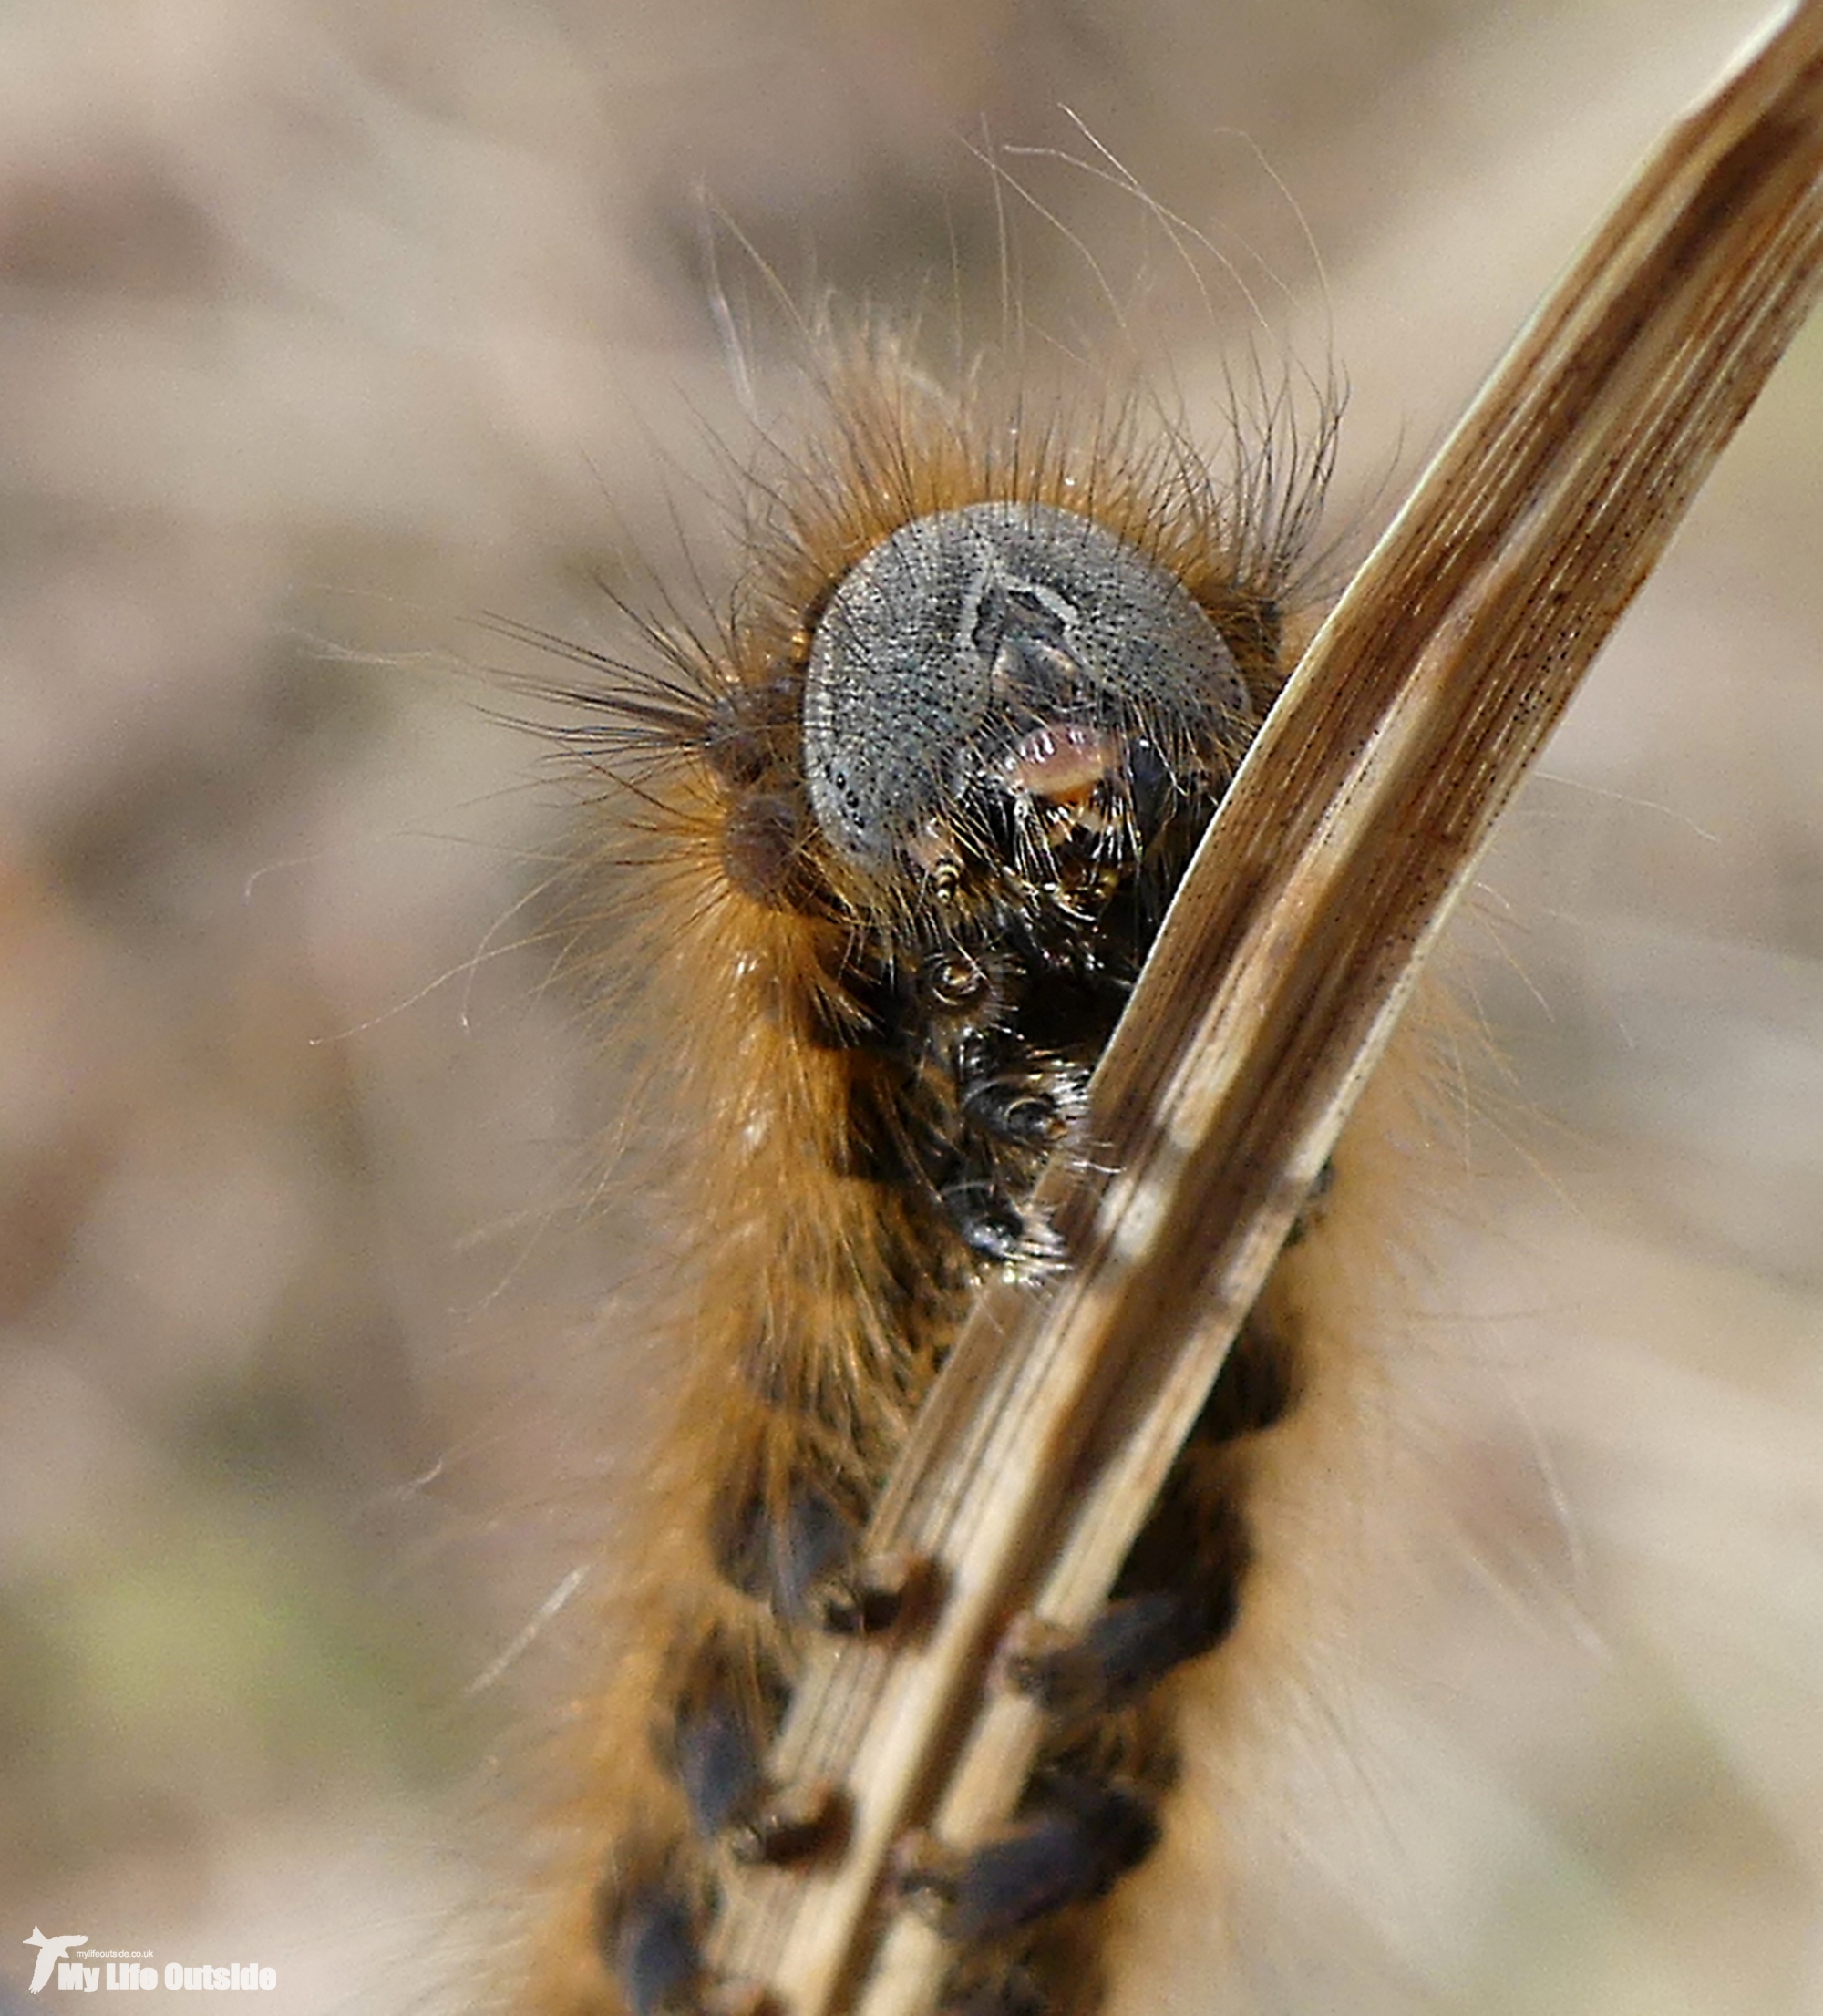 P1140532 - Caterpillar, Isle of Mull